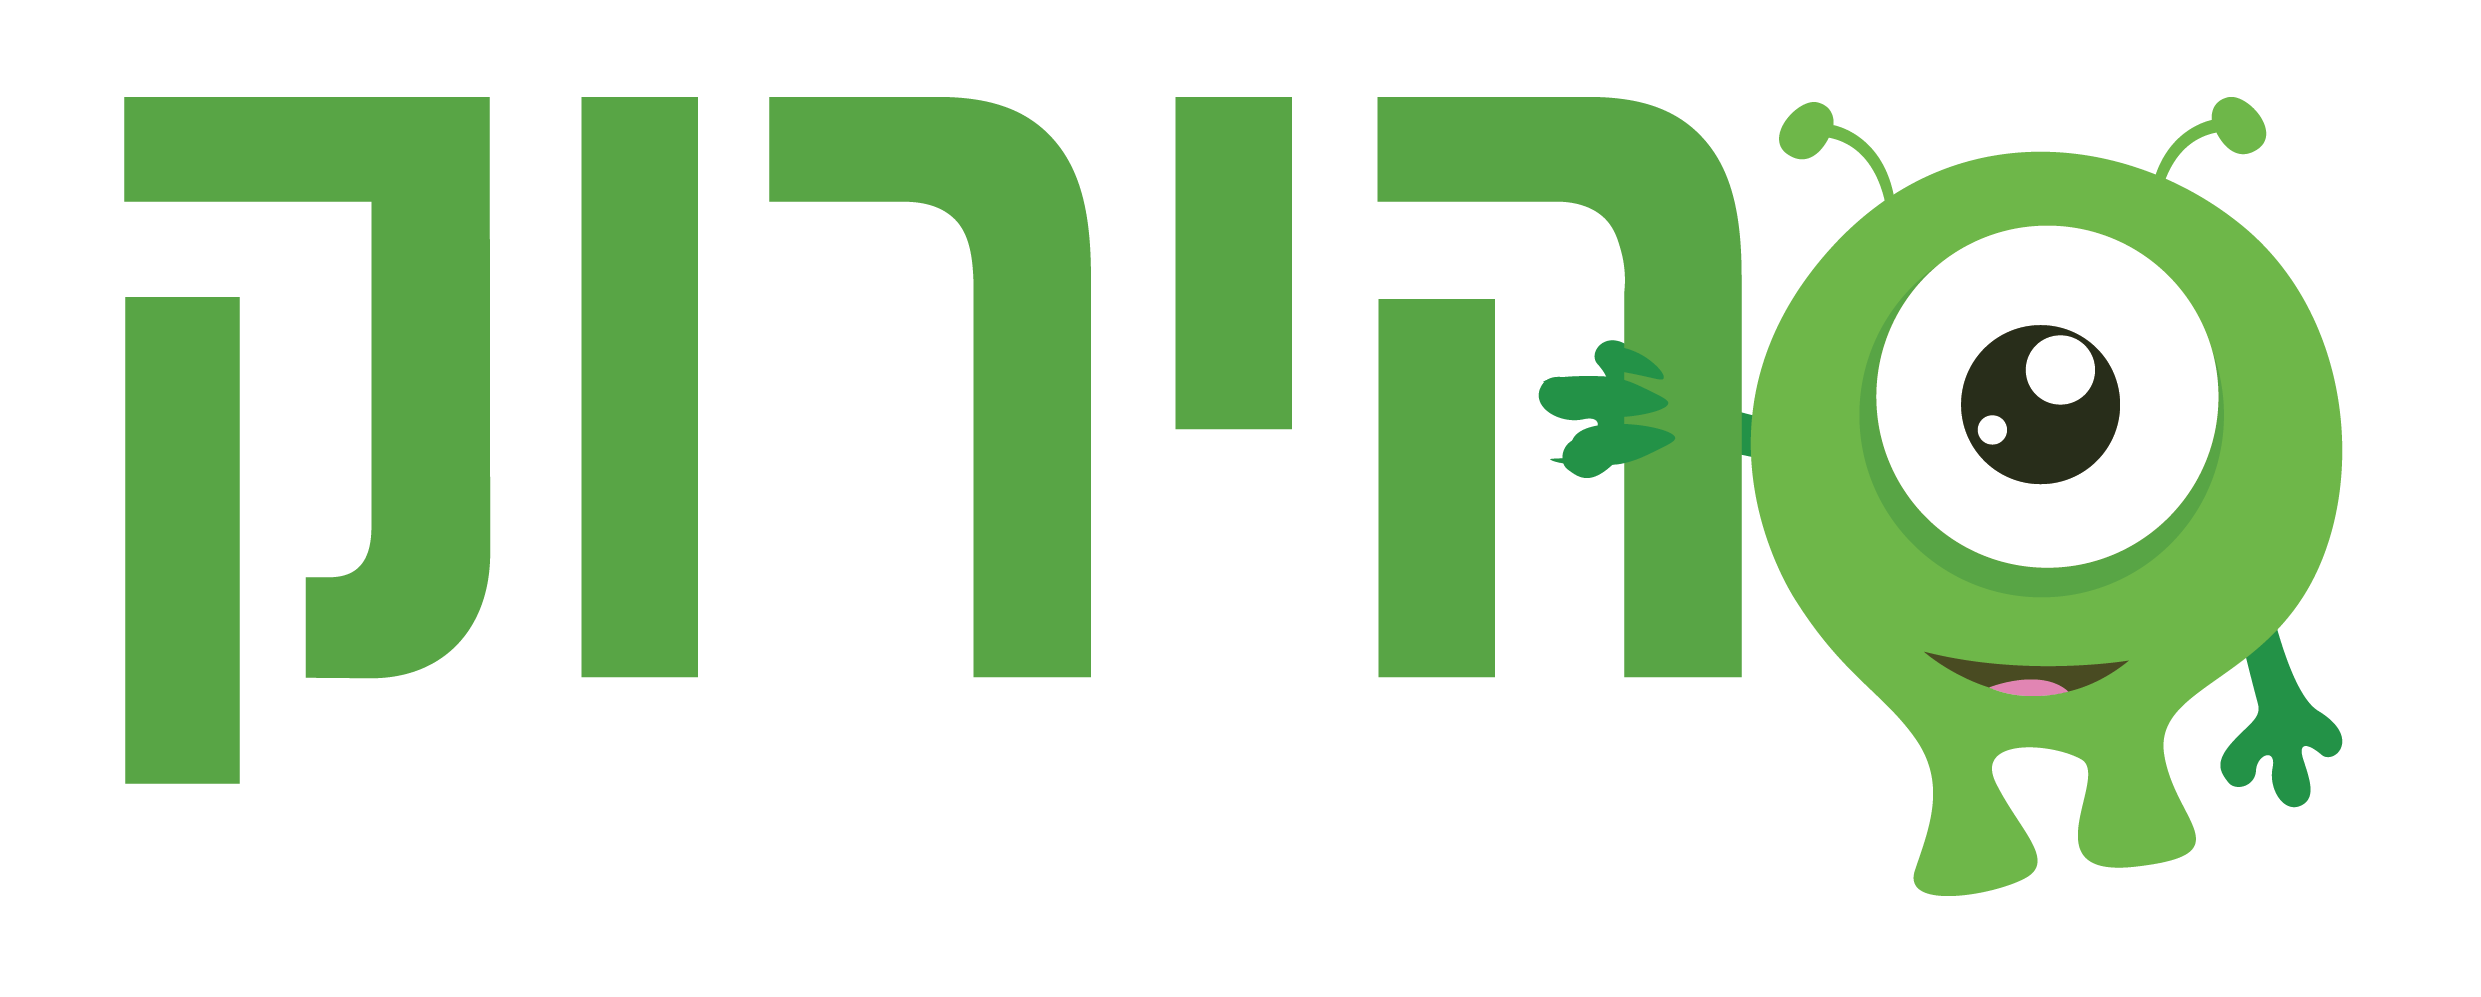 הירוק לוגו